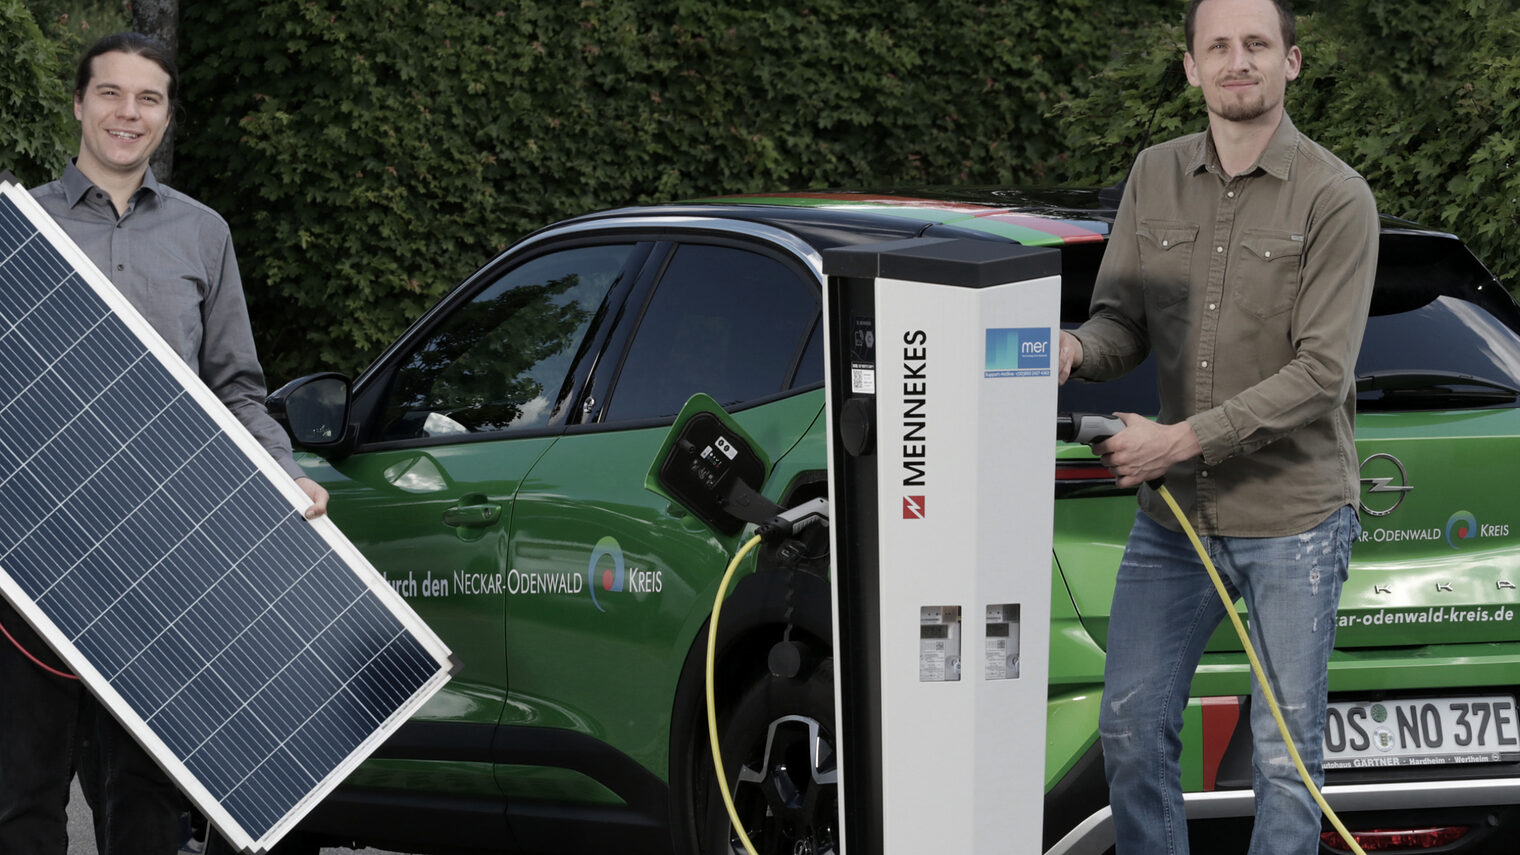 Zwei Männer, einer hält ein Solar-Panel in der Hand, der Andere steht an einer Ladesäule mit der Hand am Ladestecker. Bei vor einem grünen Kleinwagen.